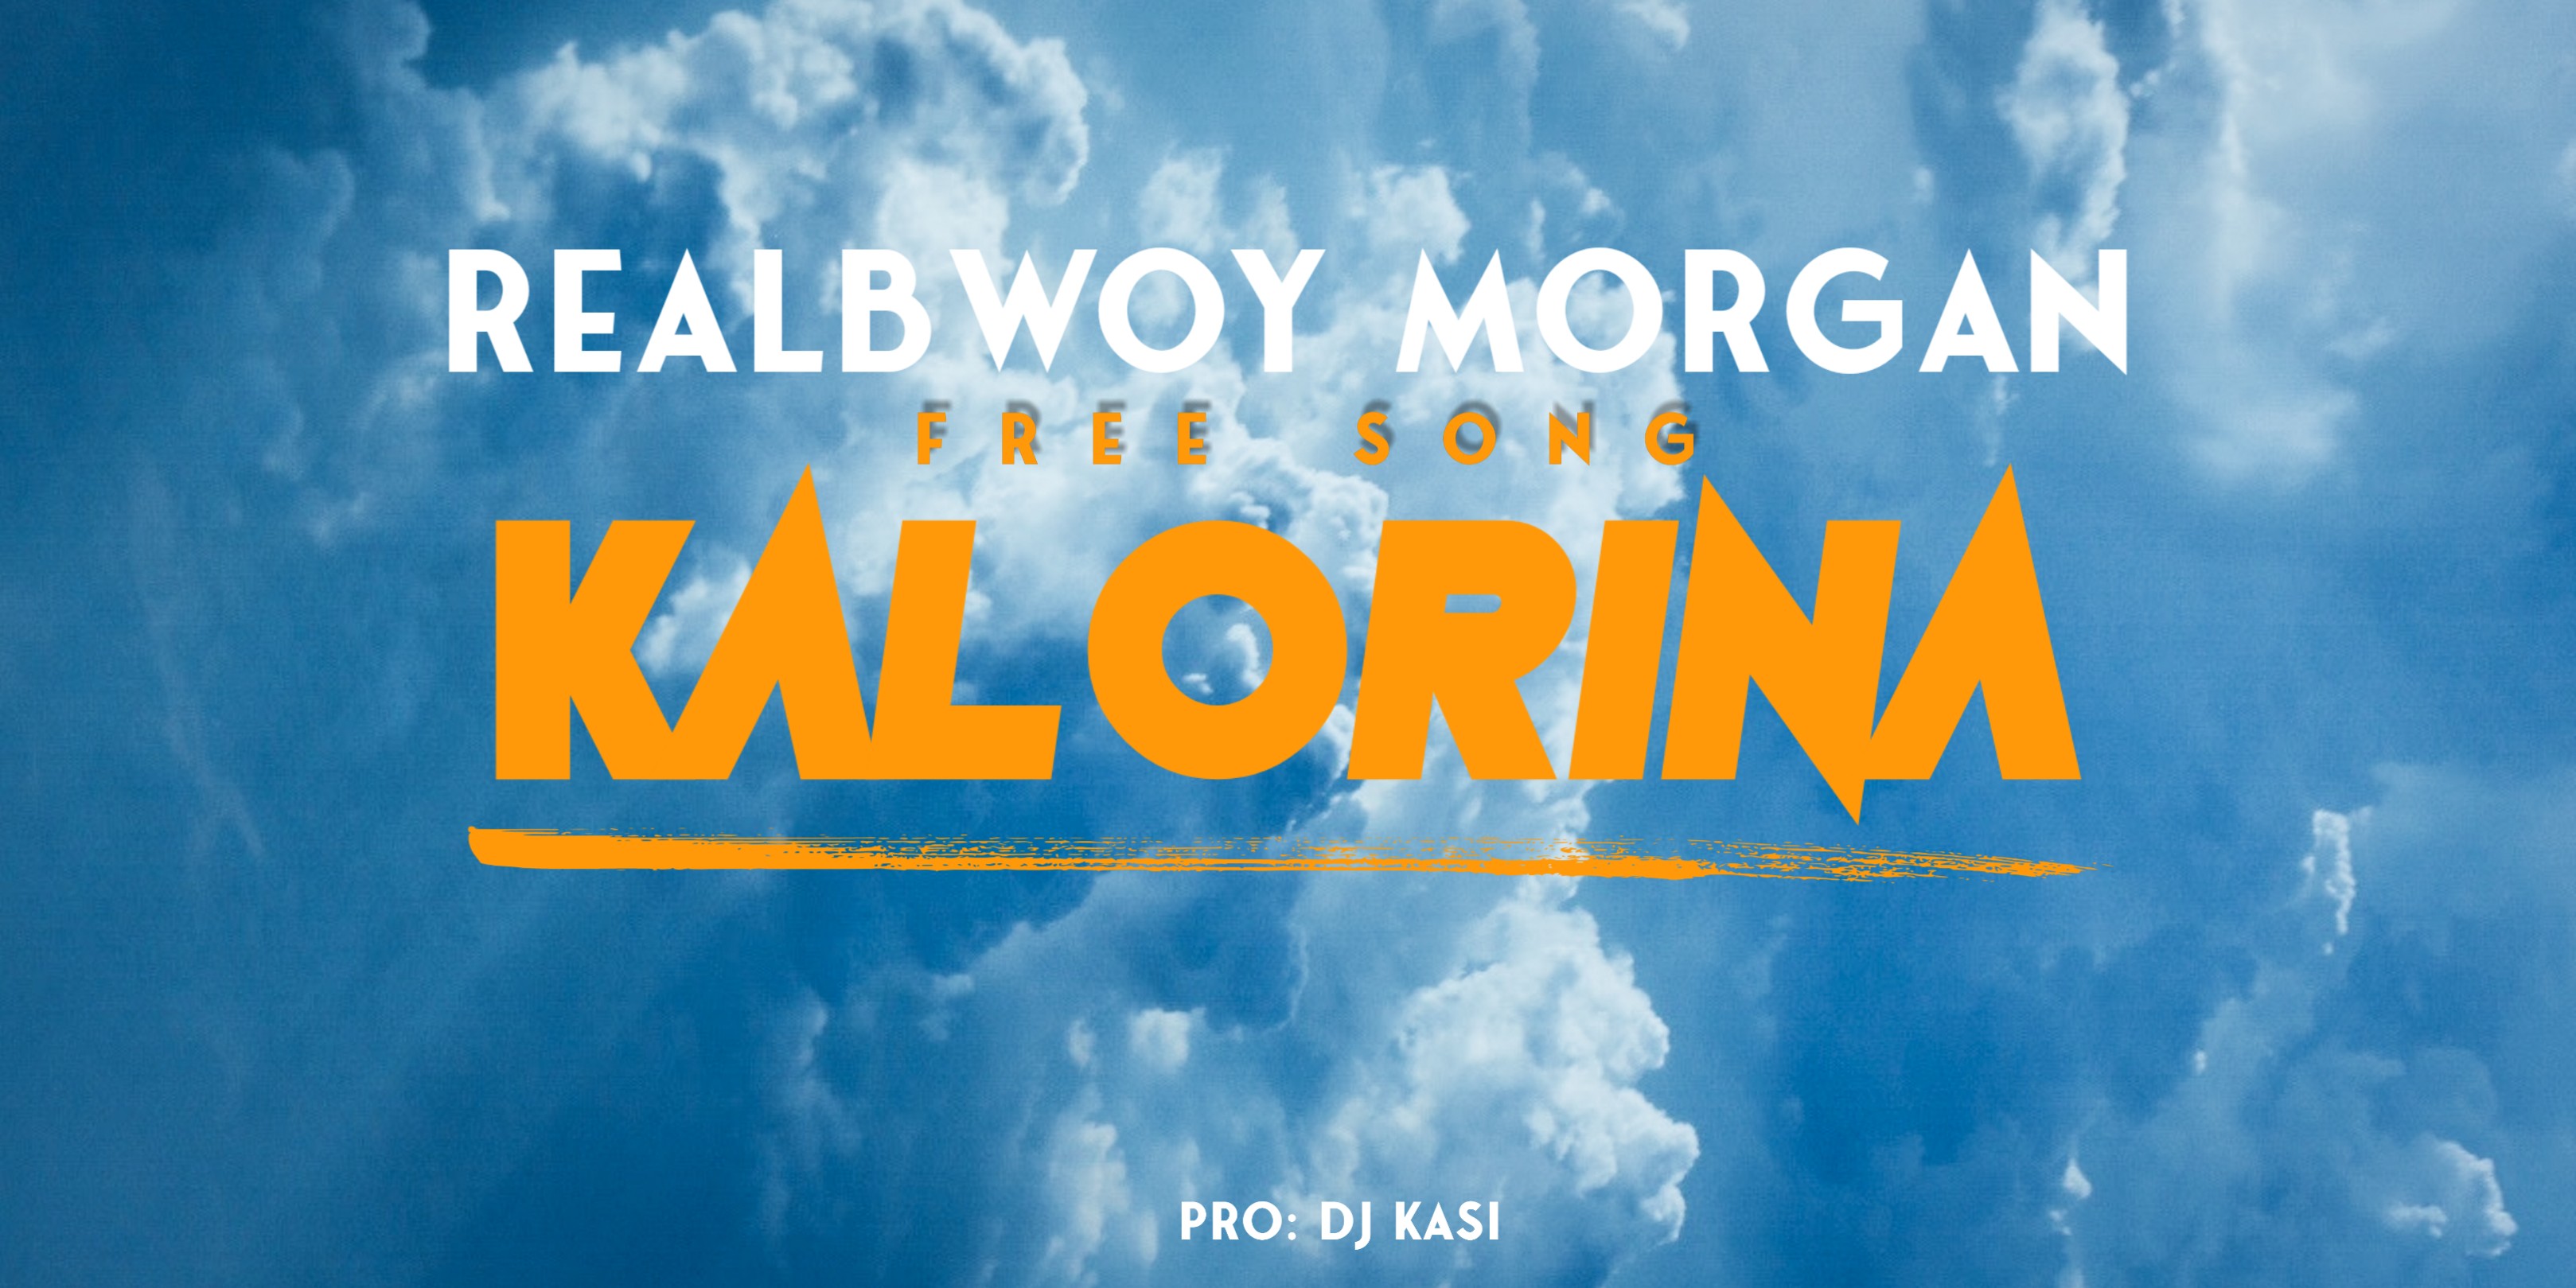 RealBwoy Morgan ,Karolina ,Free Song, Chorus,